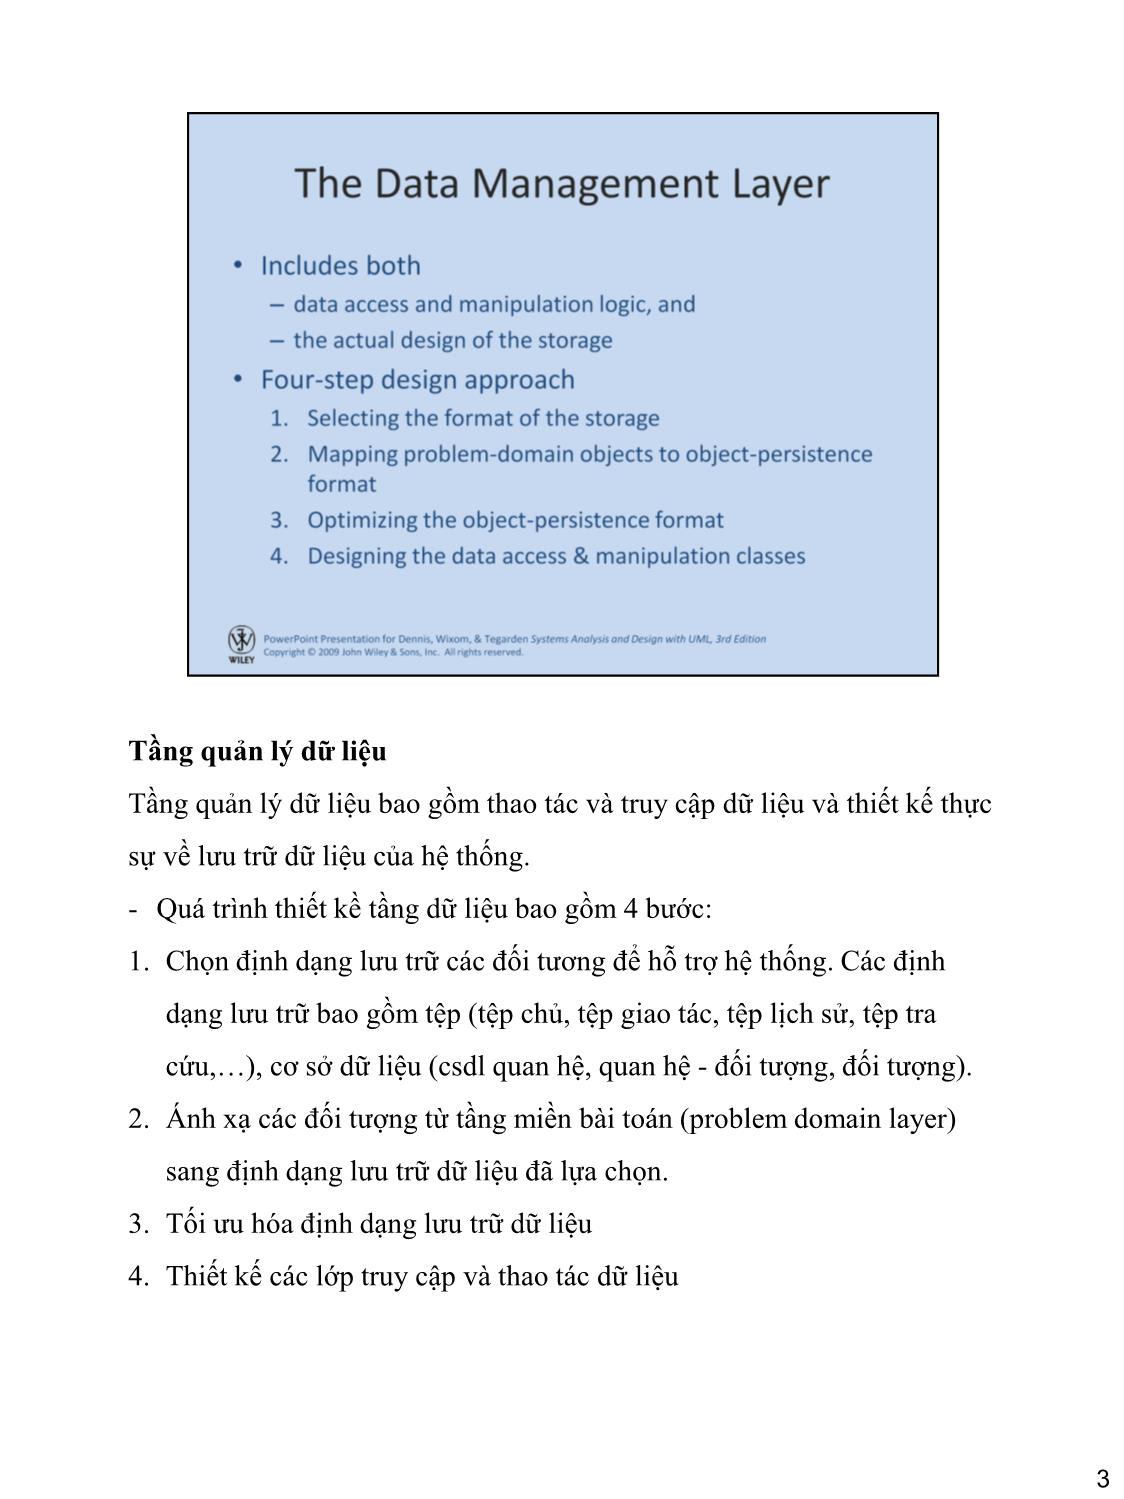 Bài giảng Hệ thống thông tin quản lý - Chương 9: Thiết kế tầng quản lý dữ liệu trang 3